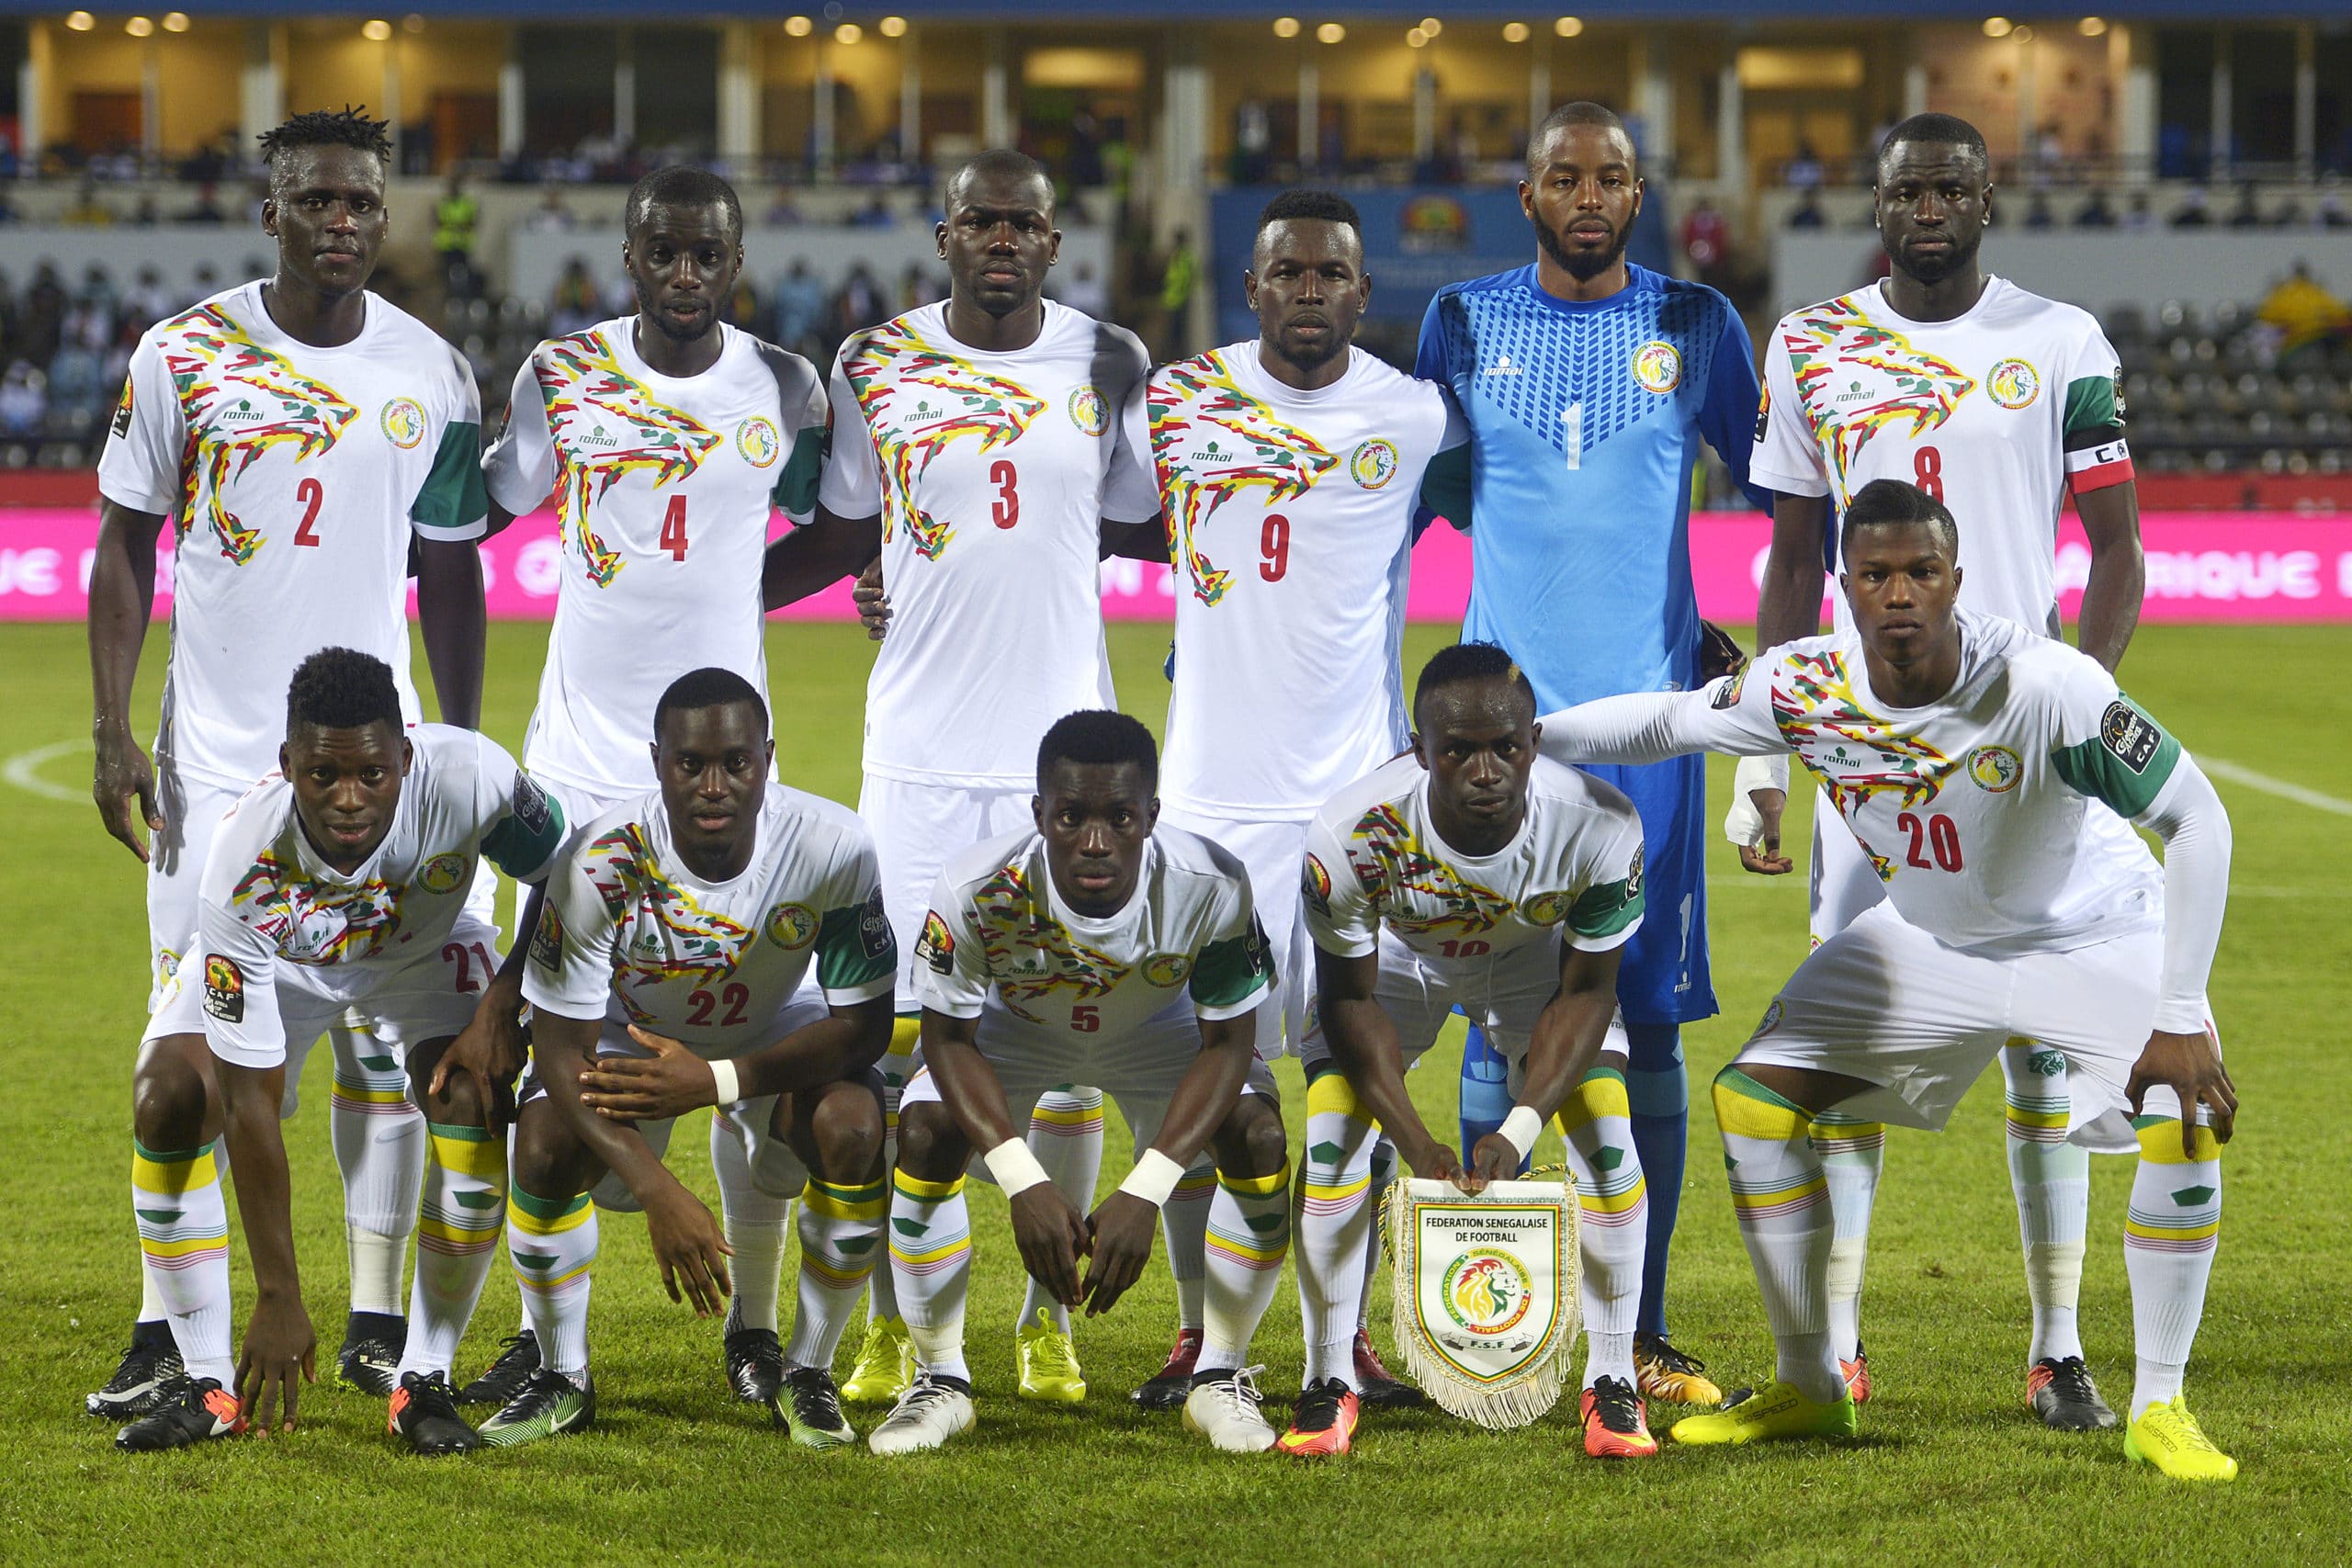 Fußball heute Africa Cup 2022 * Ergebnis ** 2:0 Senegal - Kapverden im Achtelfinale